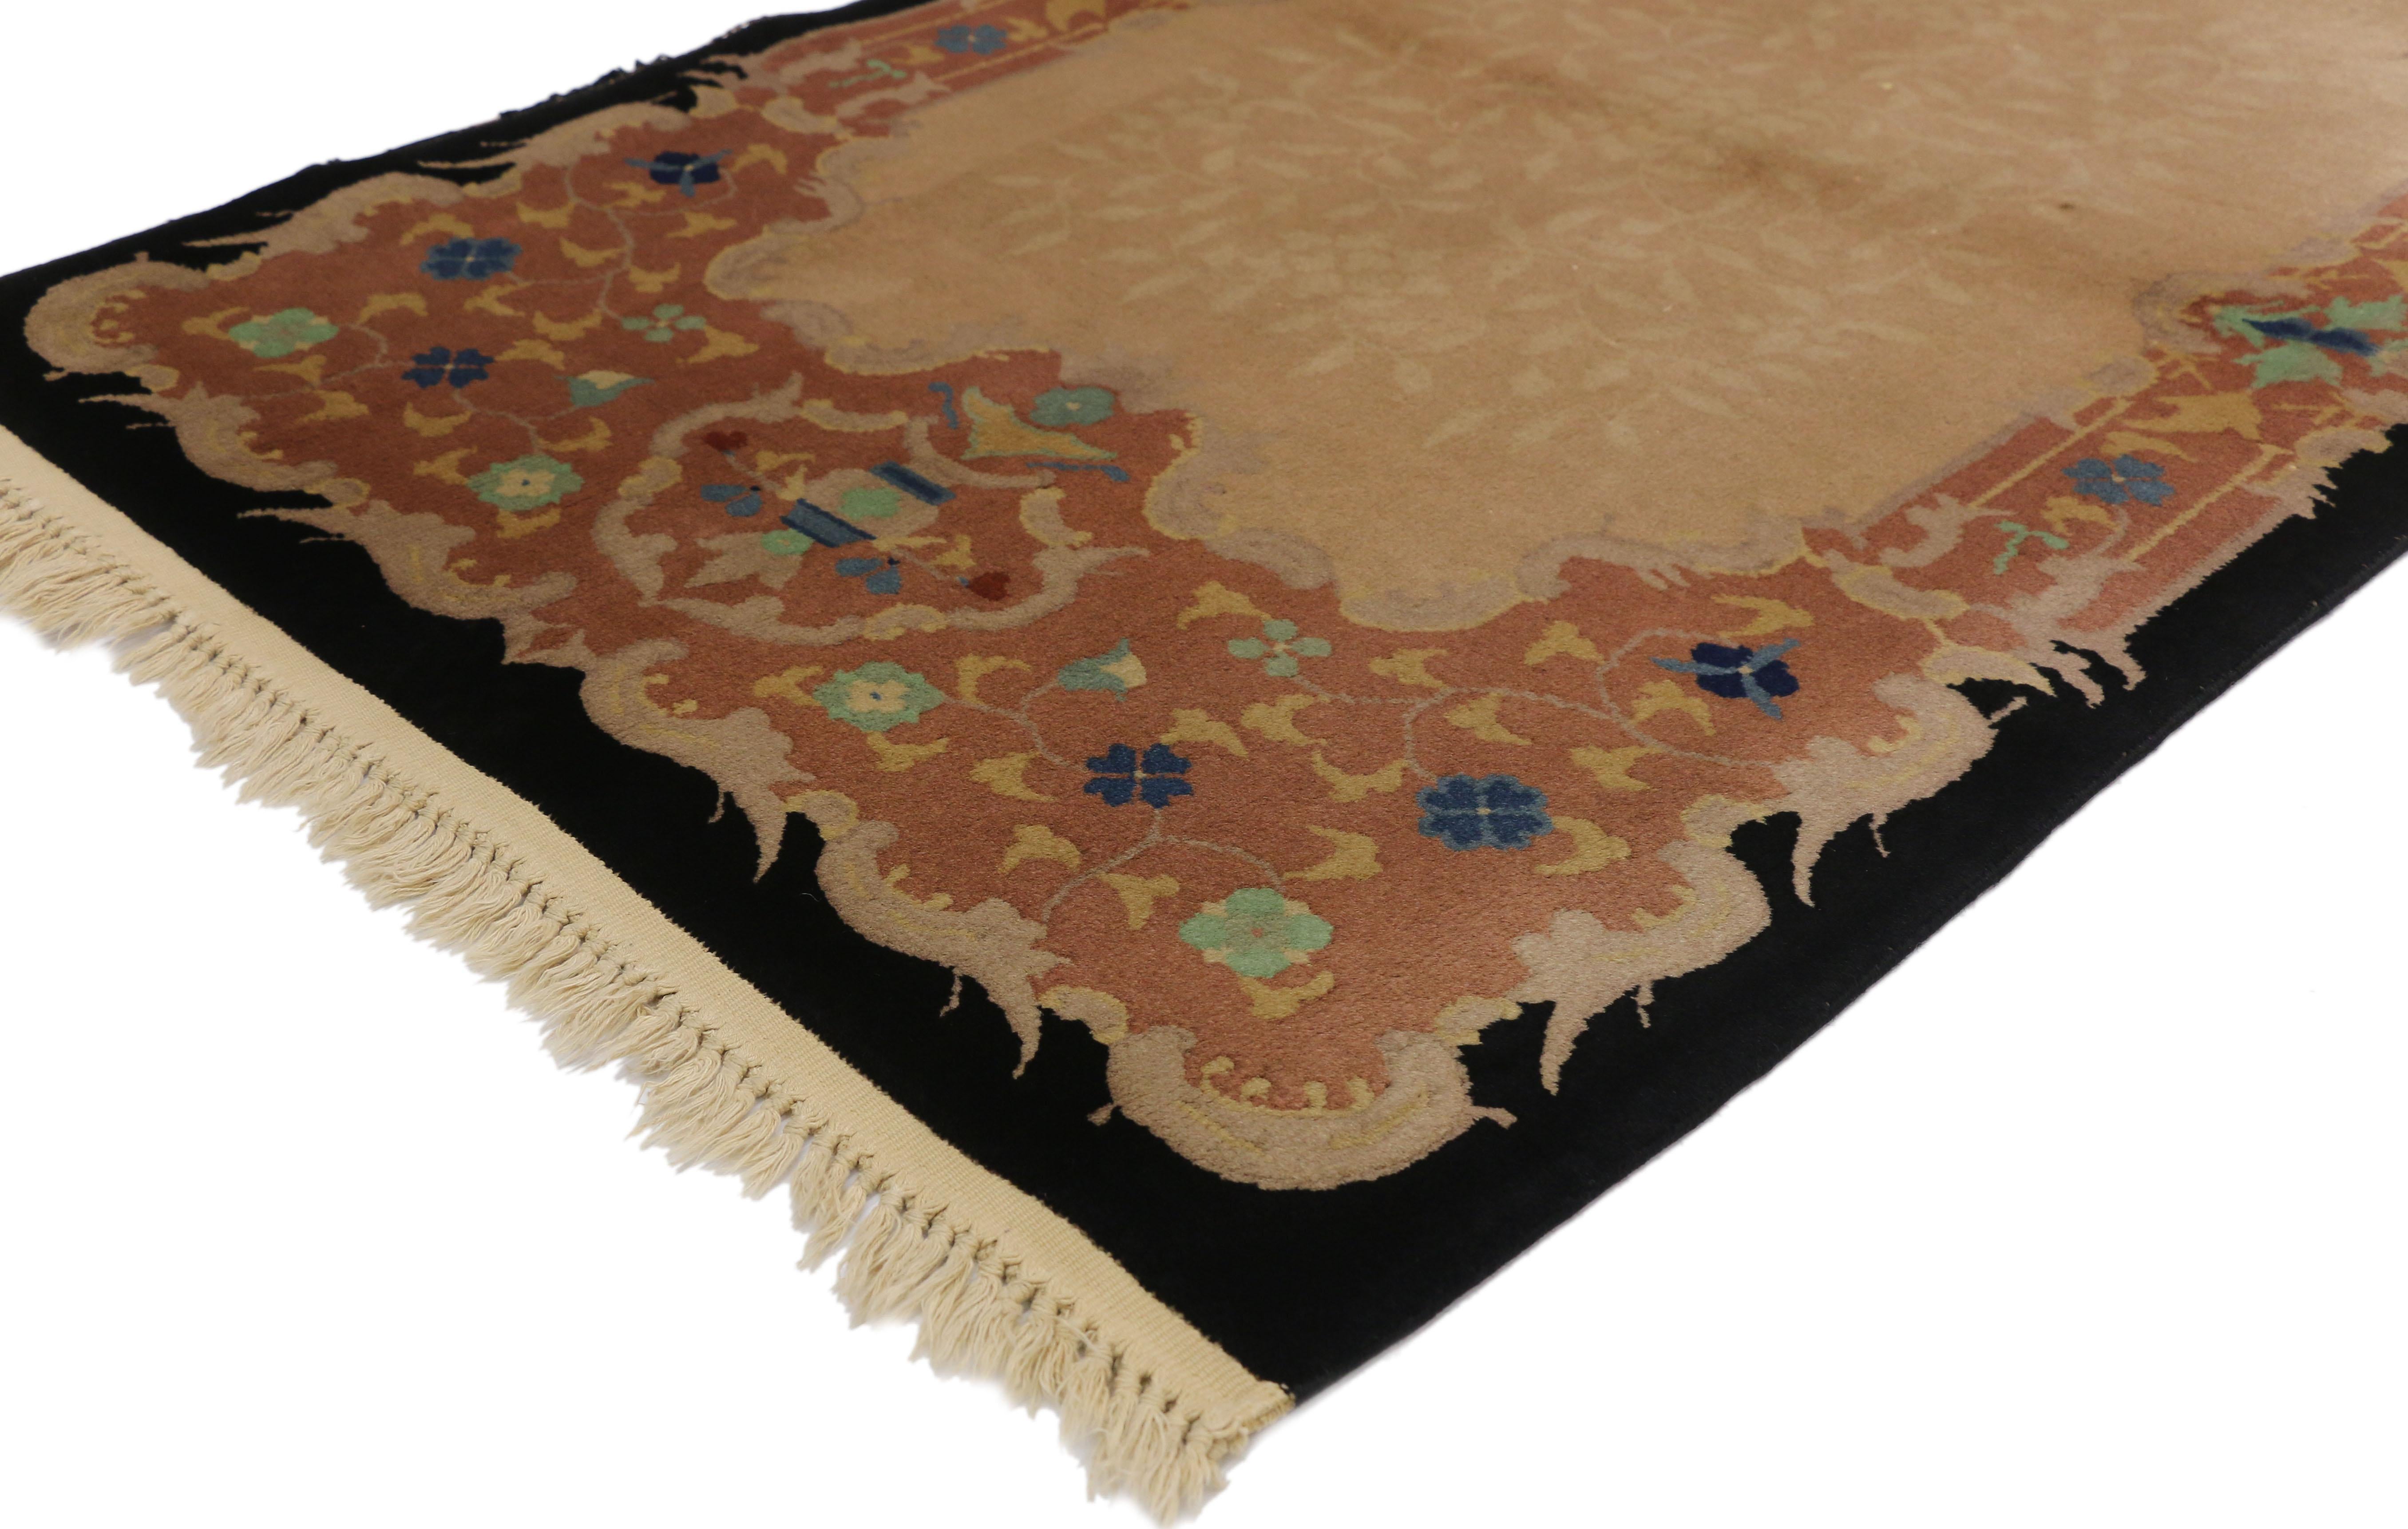 70718 tapis Art Déco chinois ancien avec un style Chinoiserie d'influence européenne. Ce tapis Art déco chinois ancien en laine nouée à la main présente un subtil motif d'arabesques réparti sur un champ champagne entouré d'une bordure florale ornée.